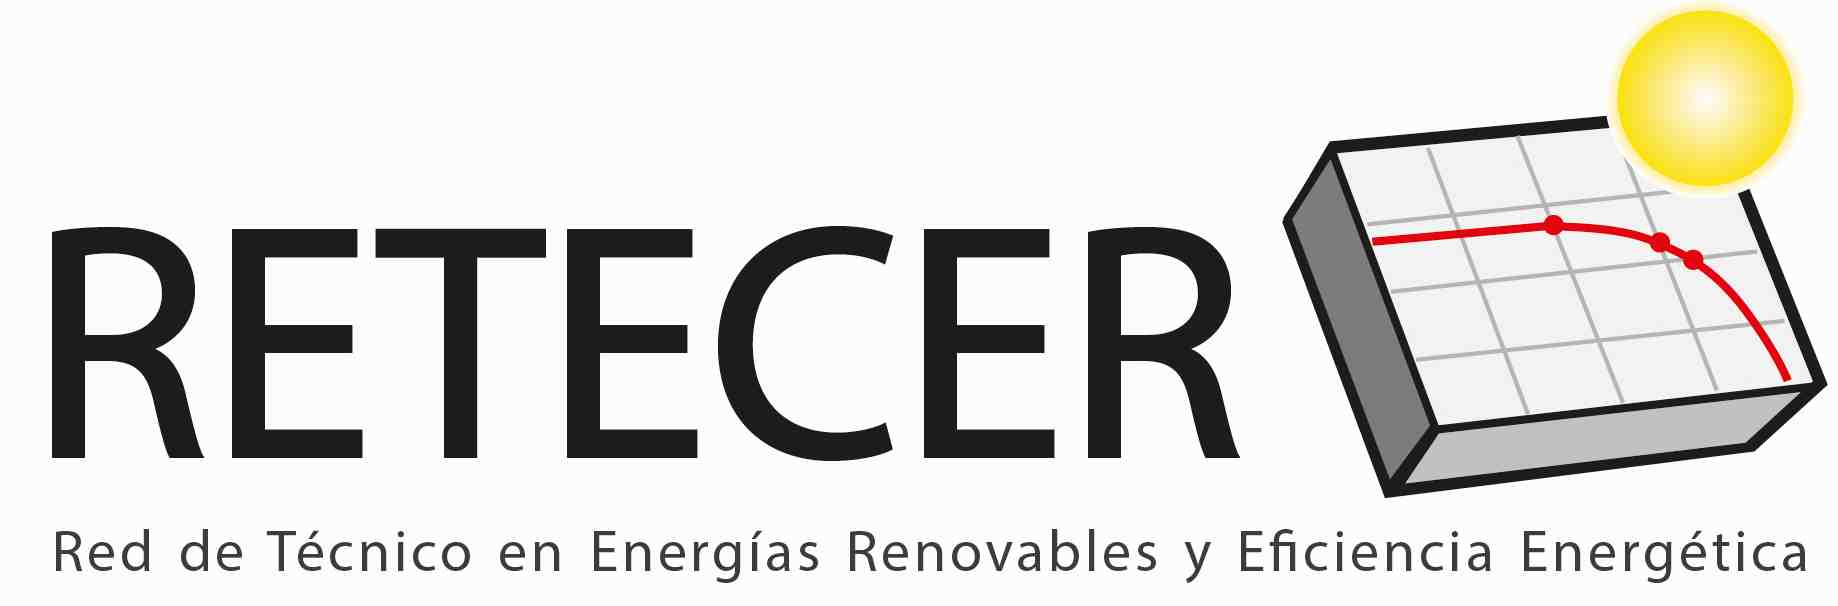 Retecer: Red de Técnicos en Energías Renovables y Eficiencia Energética